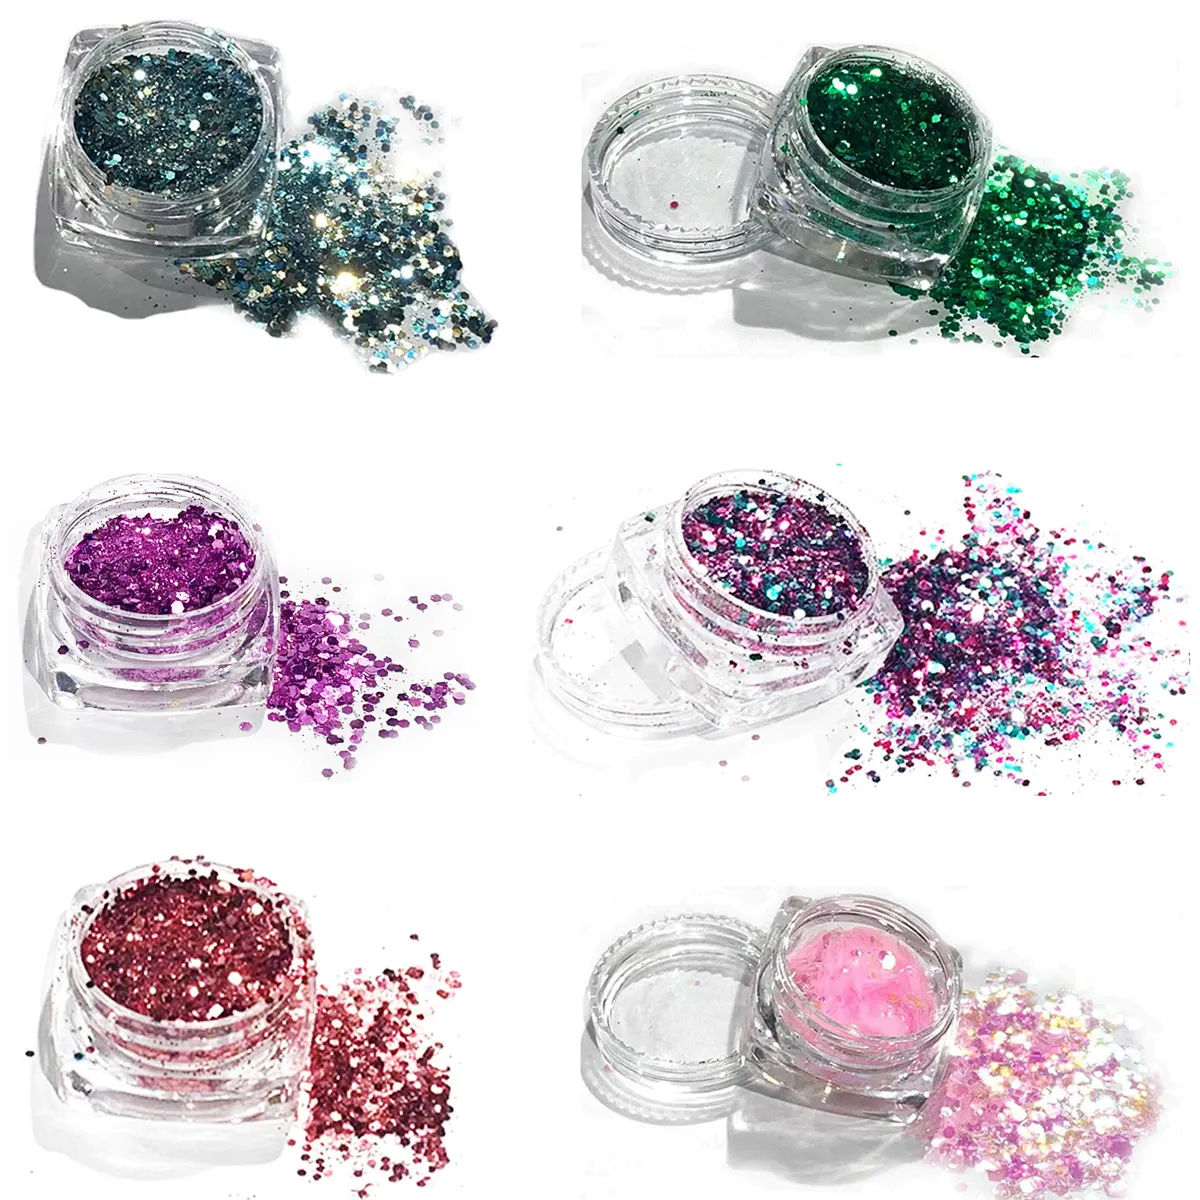 Purpurina ultrafina para uñas, 6 colores, mezcla de purpurina con lentejuelas irregulares para decoración de uñas, artesanías, venta al por mayor